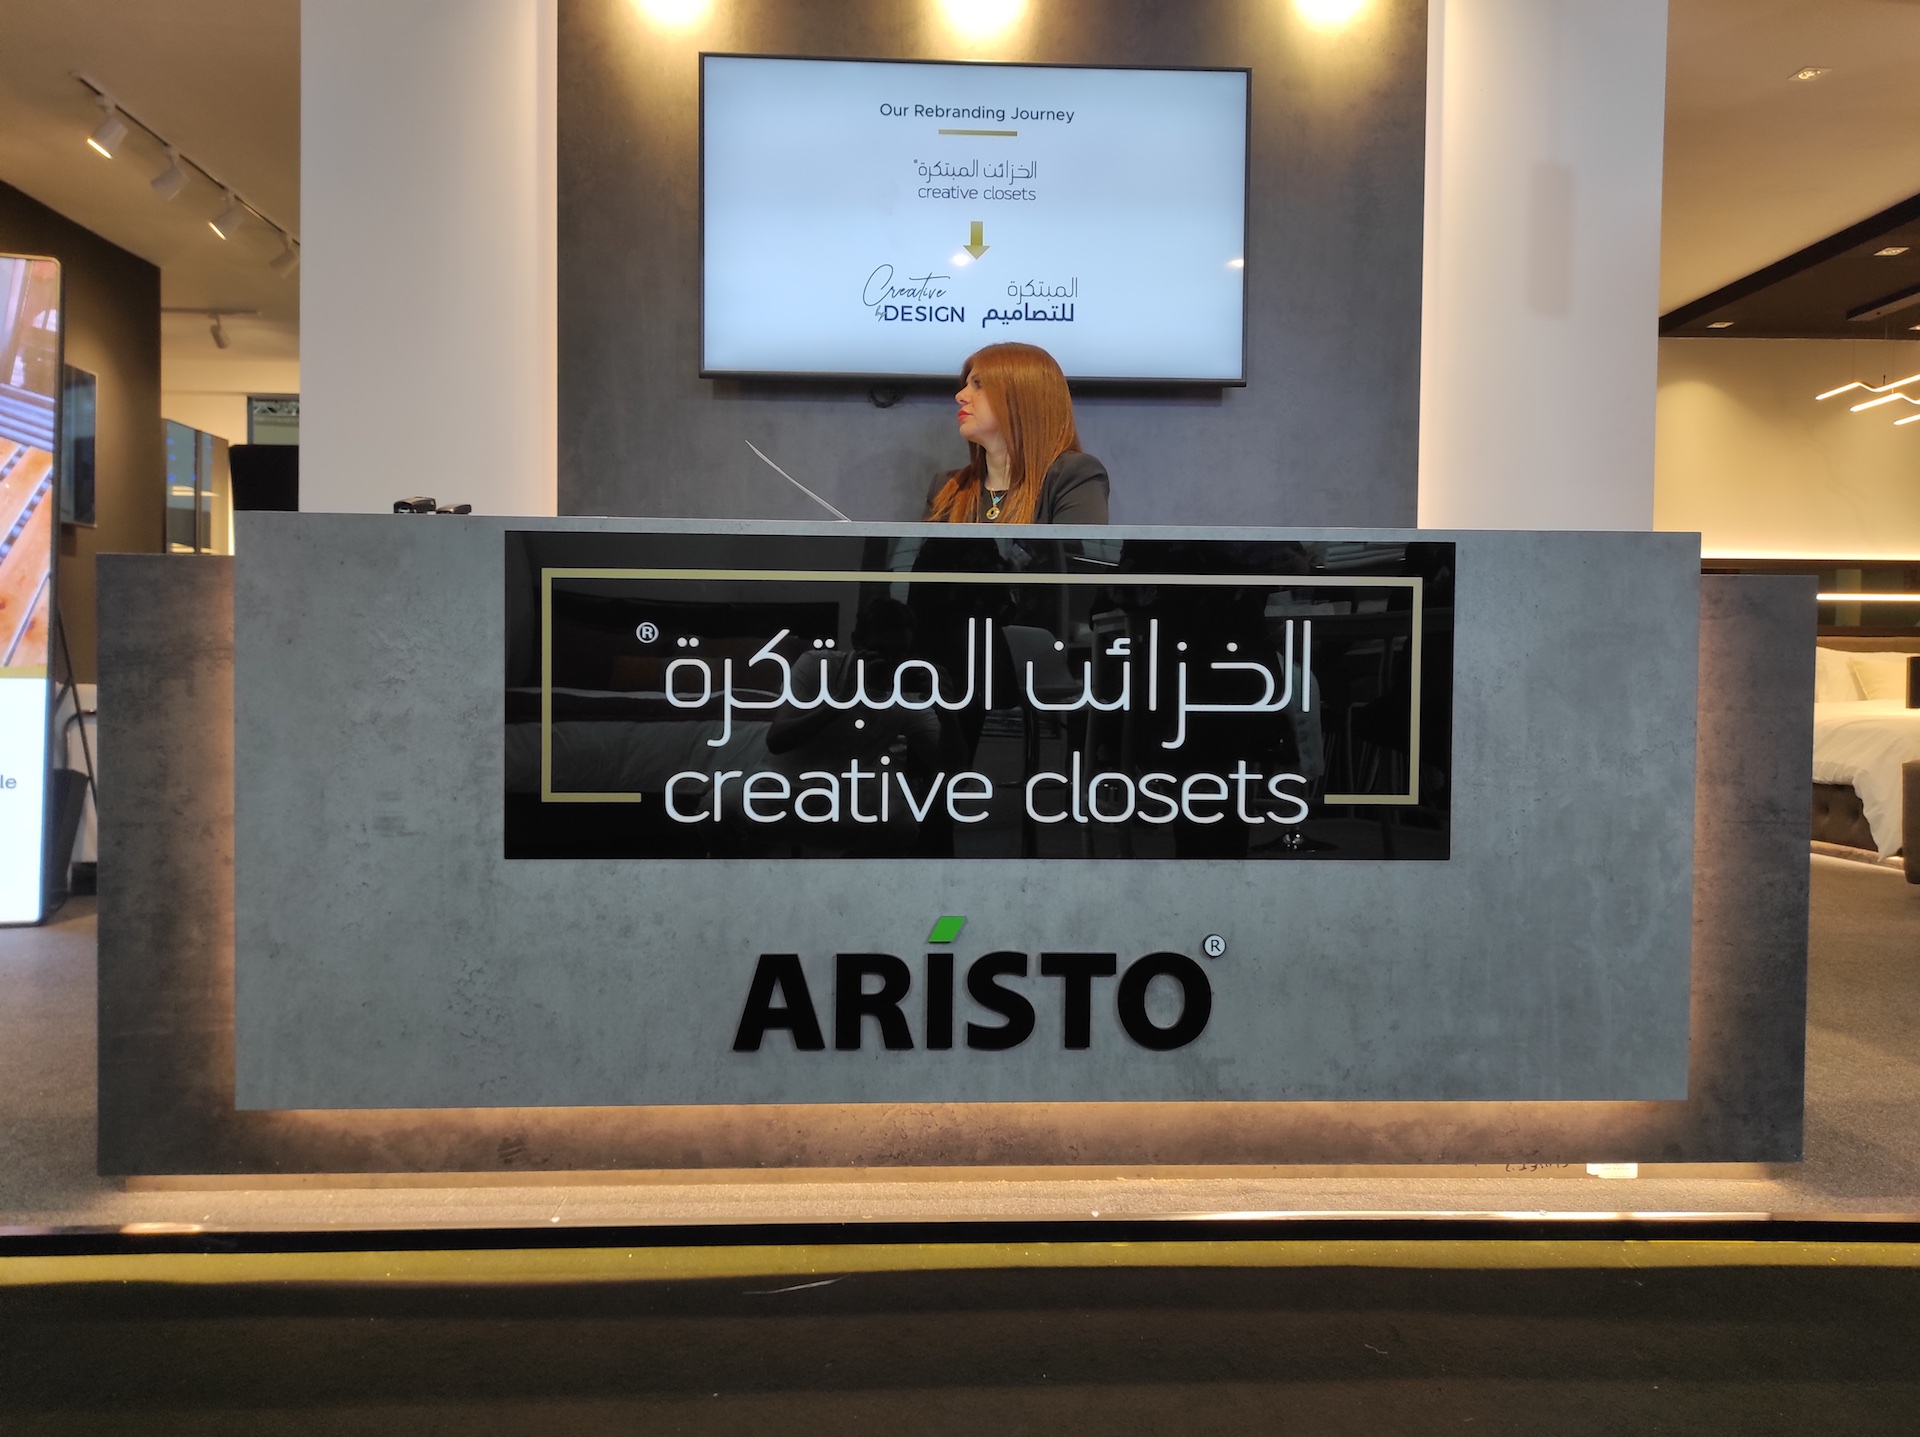 Других посмотреть и себя показать: ARISTO участник выставки INDEX в Дубае!